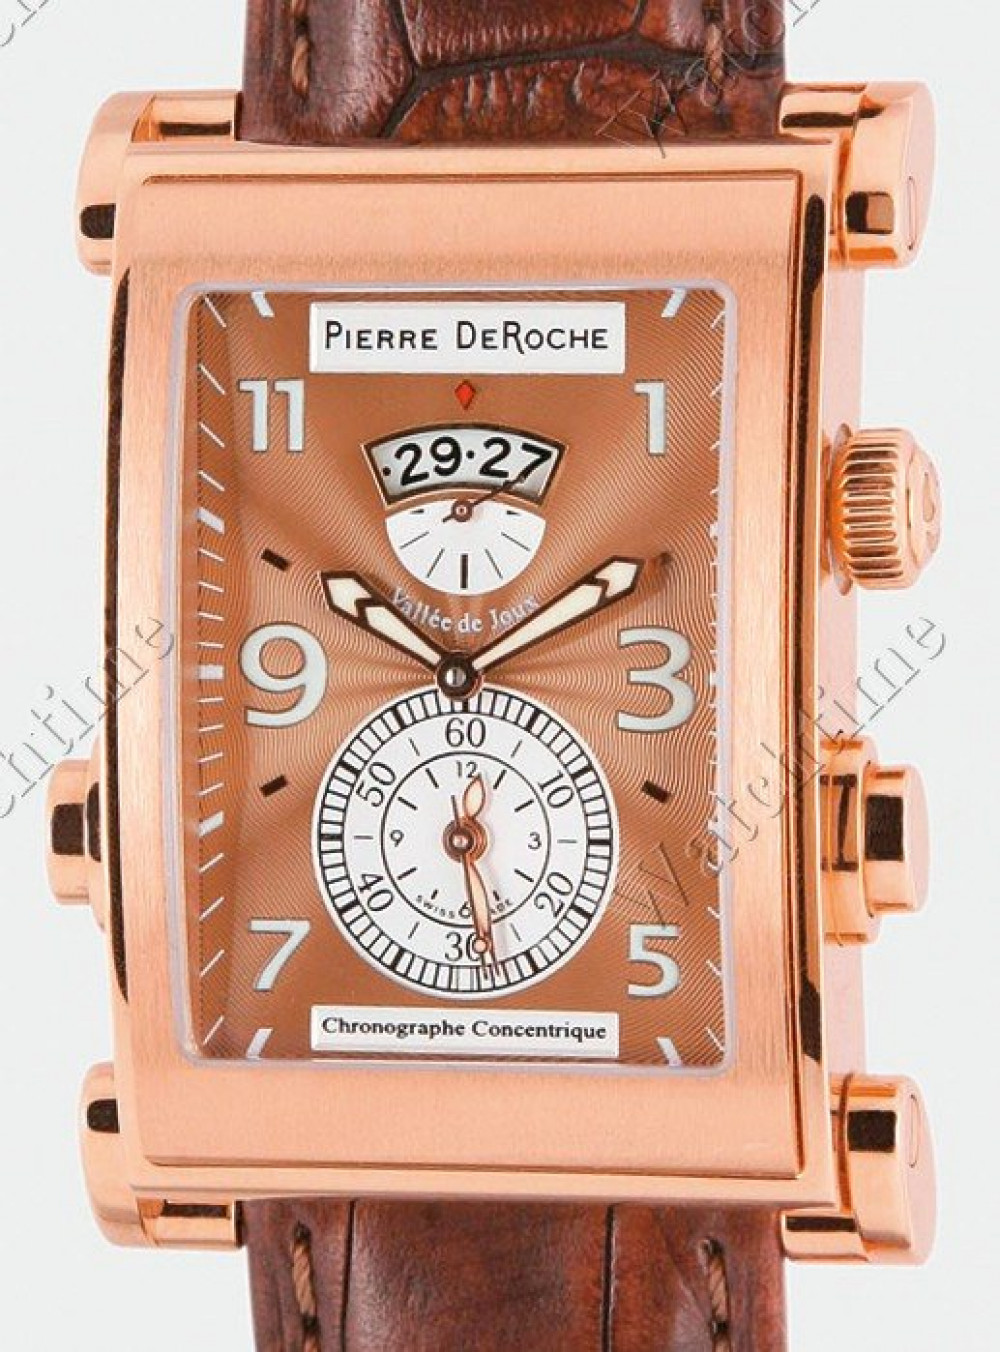 Zegarek firmy DeRoche Pierre, model MDA